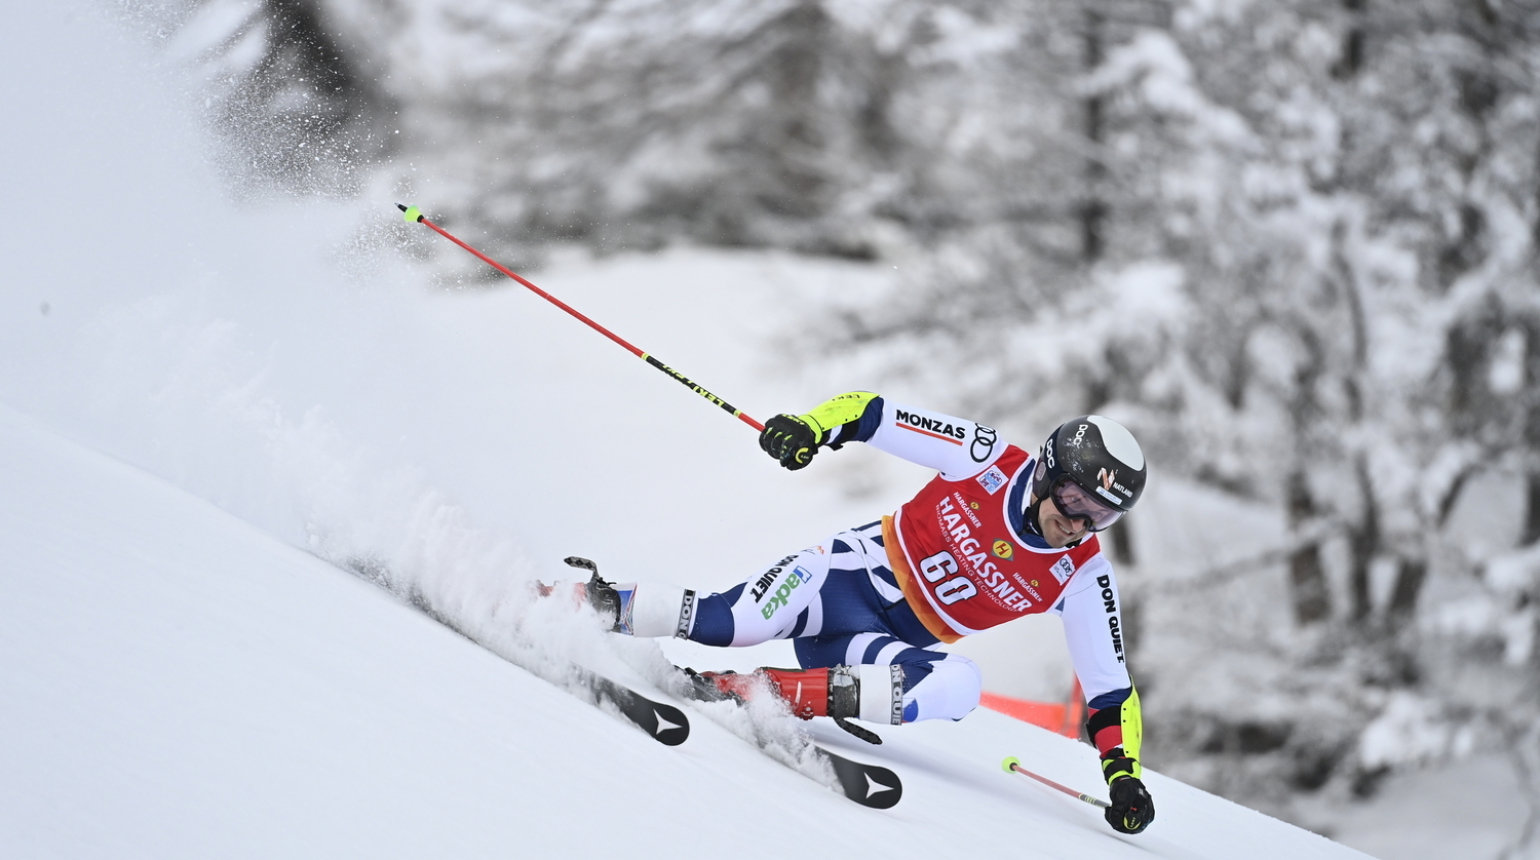 Krýzl závod obřího slalomu v Alta Badii po pádu nedokončil. Čekají ho podrobná vyšetření